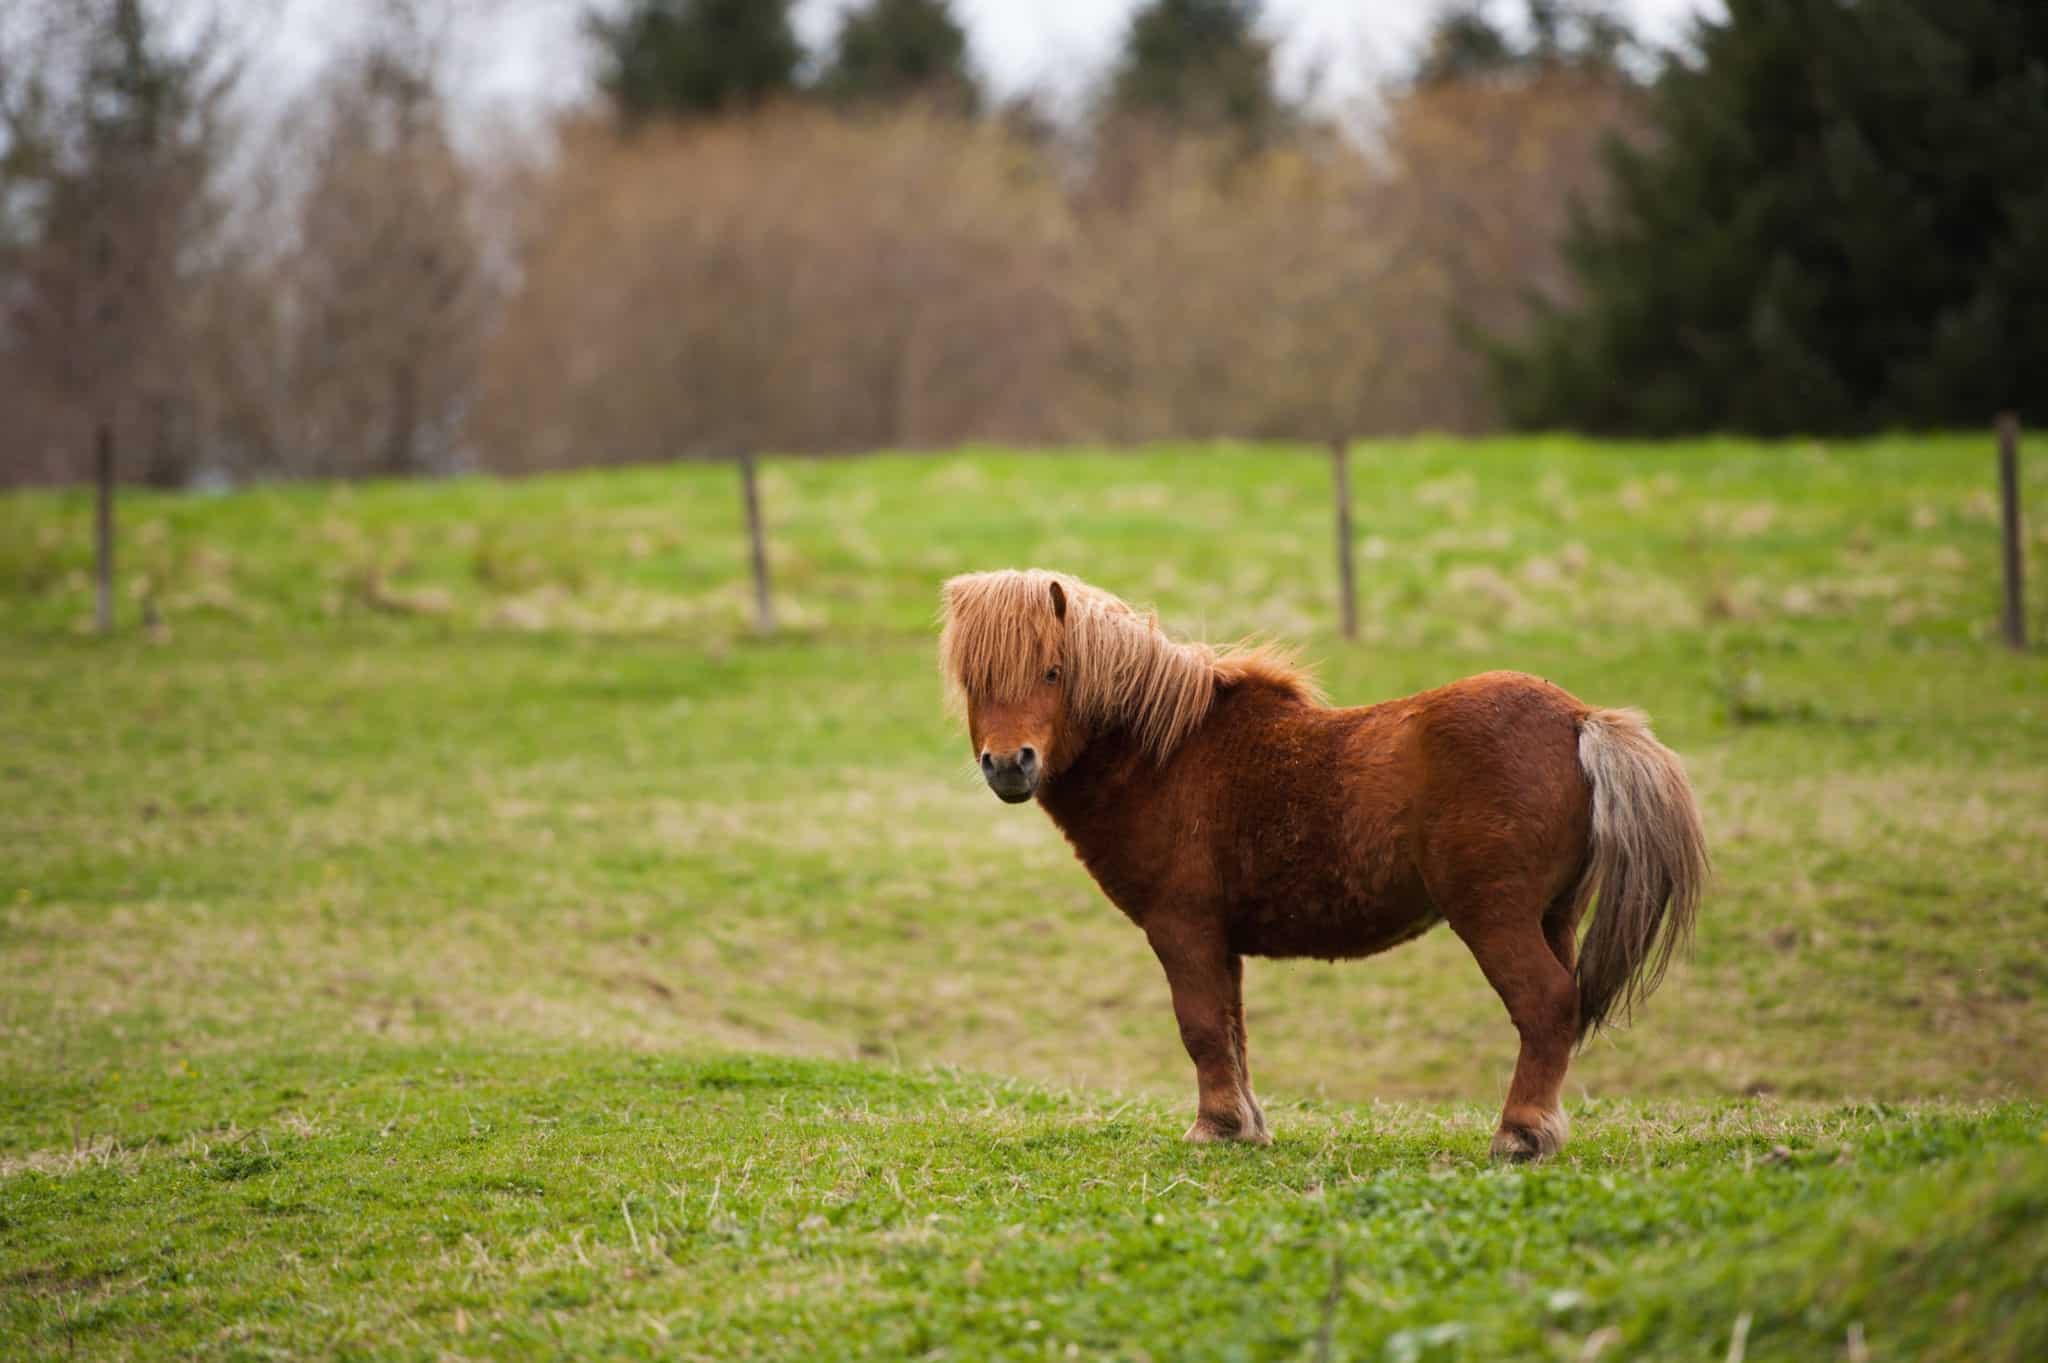 Lone Shetland Pony in a field in Aberdeenshire Scotland.